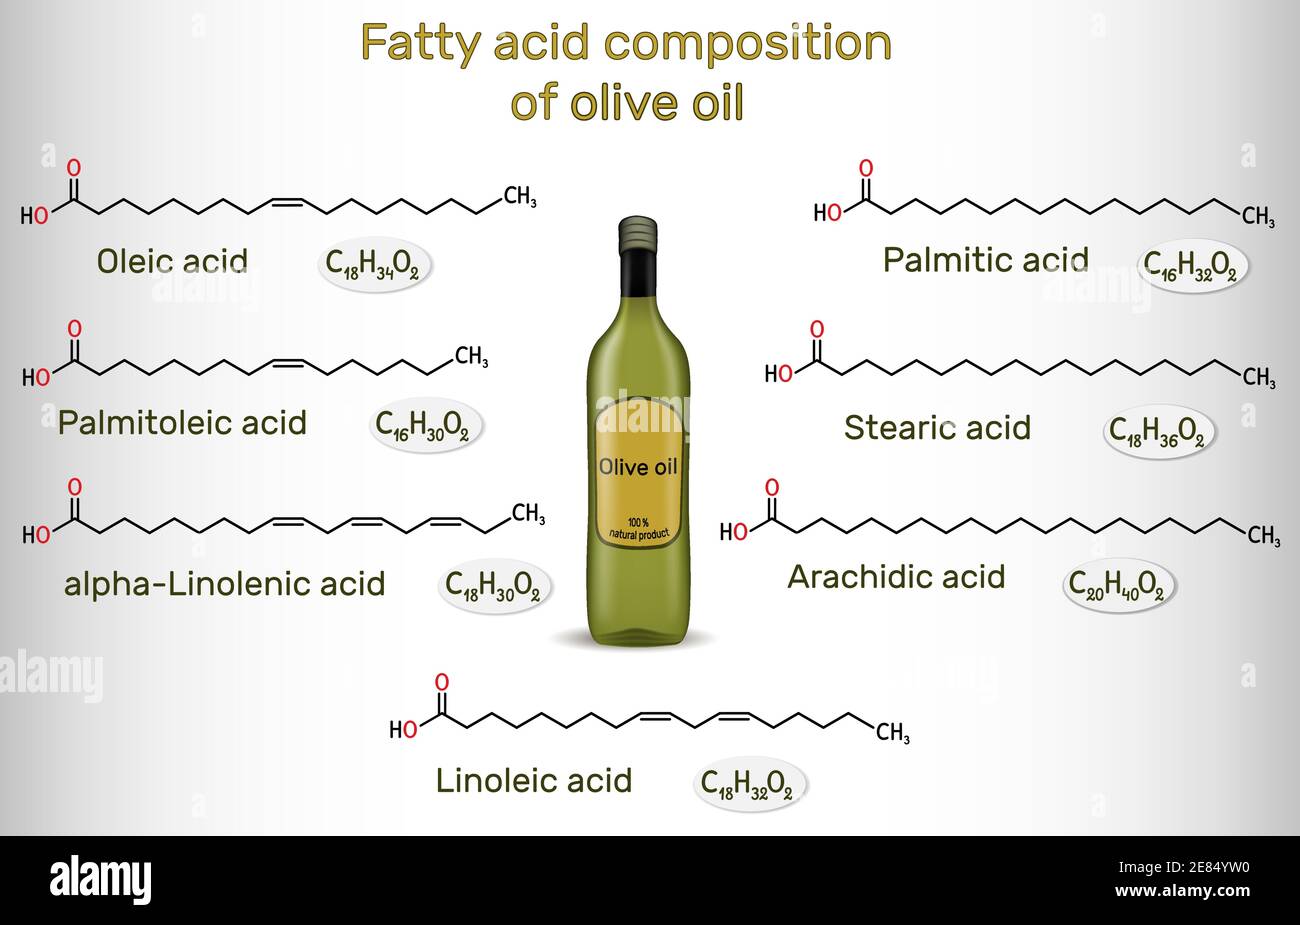 Composizione di acido grasso dell'olio d'oliva. Composti chimici: Acido oleico, linoleico, palmitico, stearico, palmitoleico, alfa-linolenico, arachidico. Strutturale Illustrazione Vettoriale